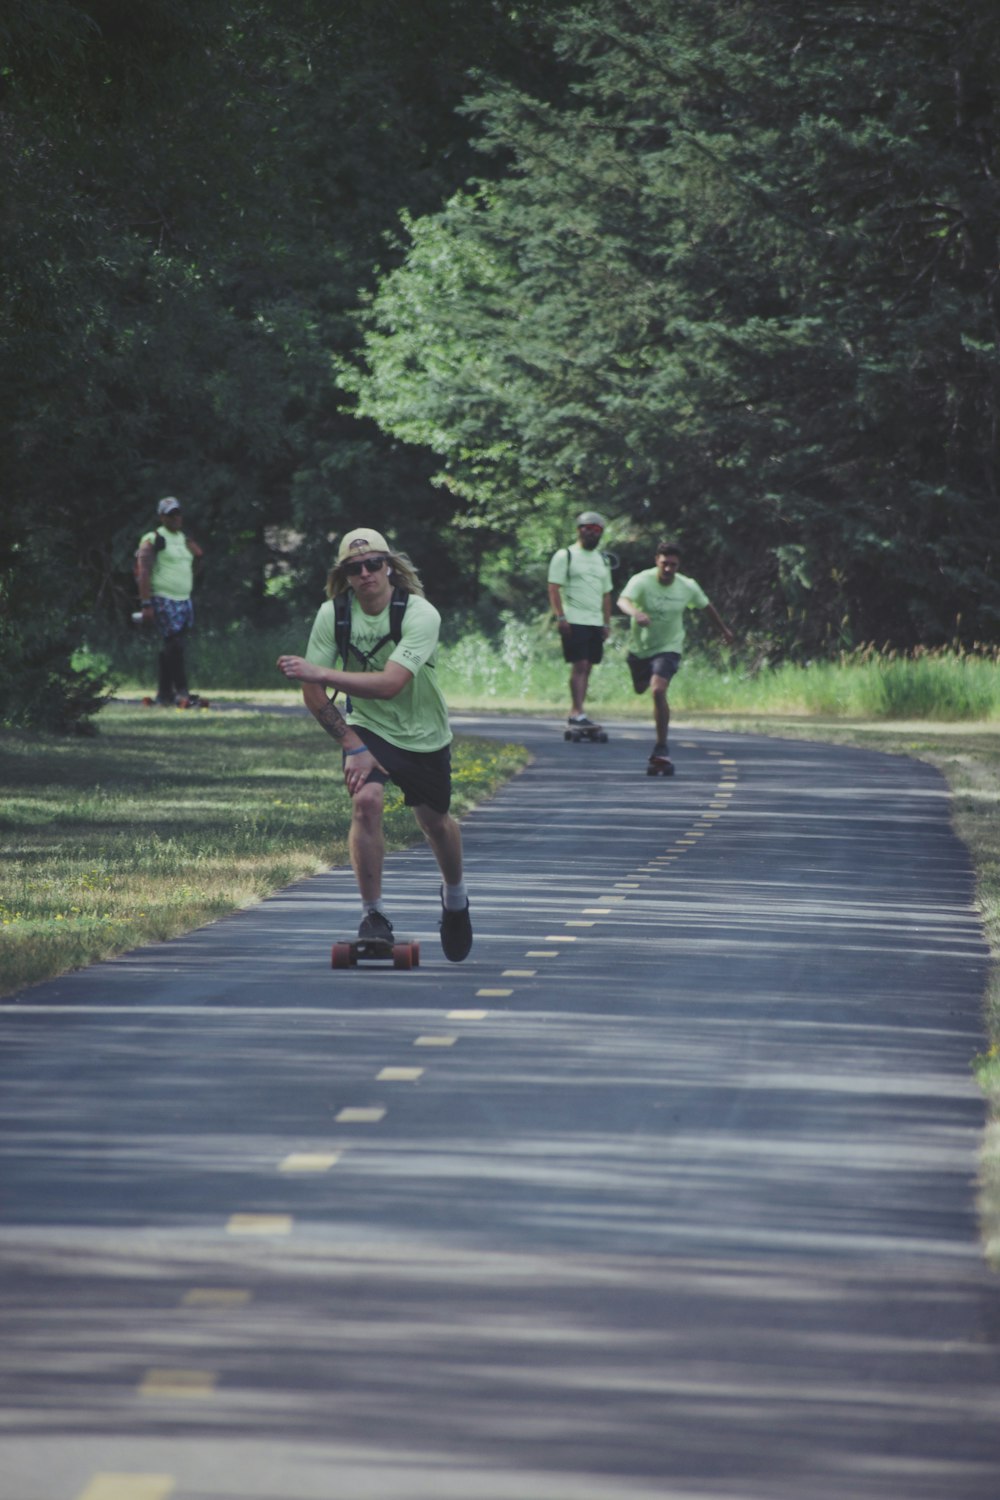 3 women running on gray asphalt road during daytime